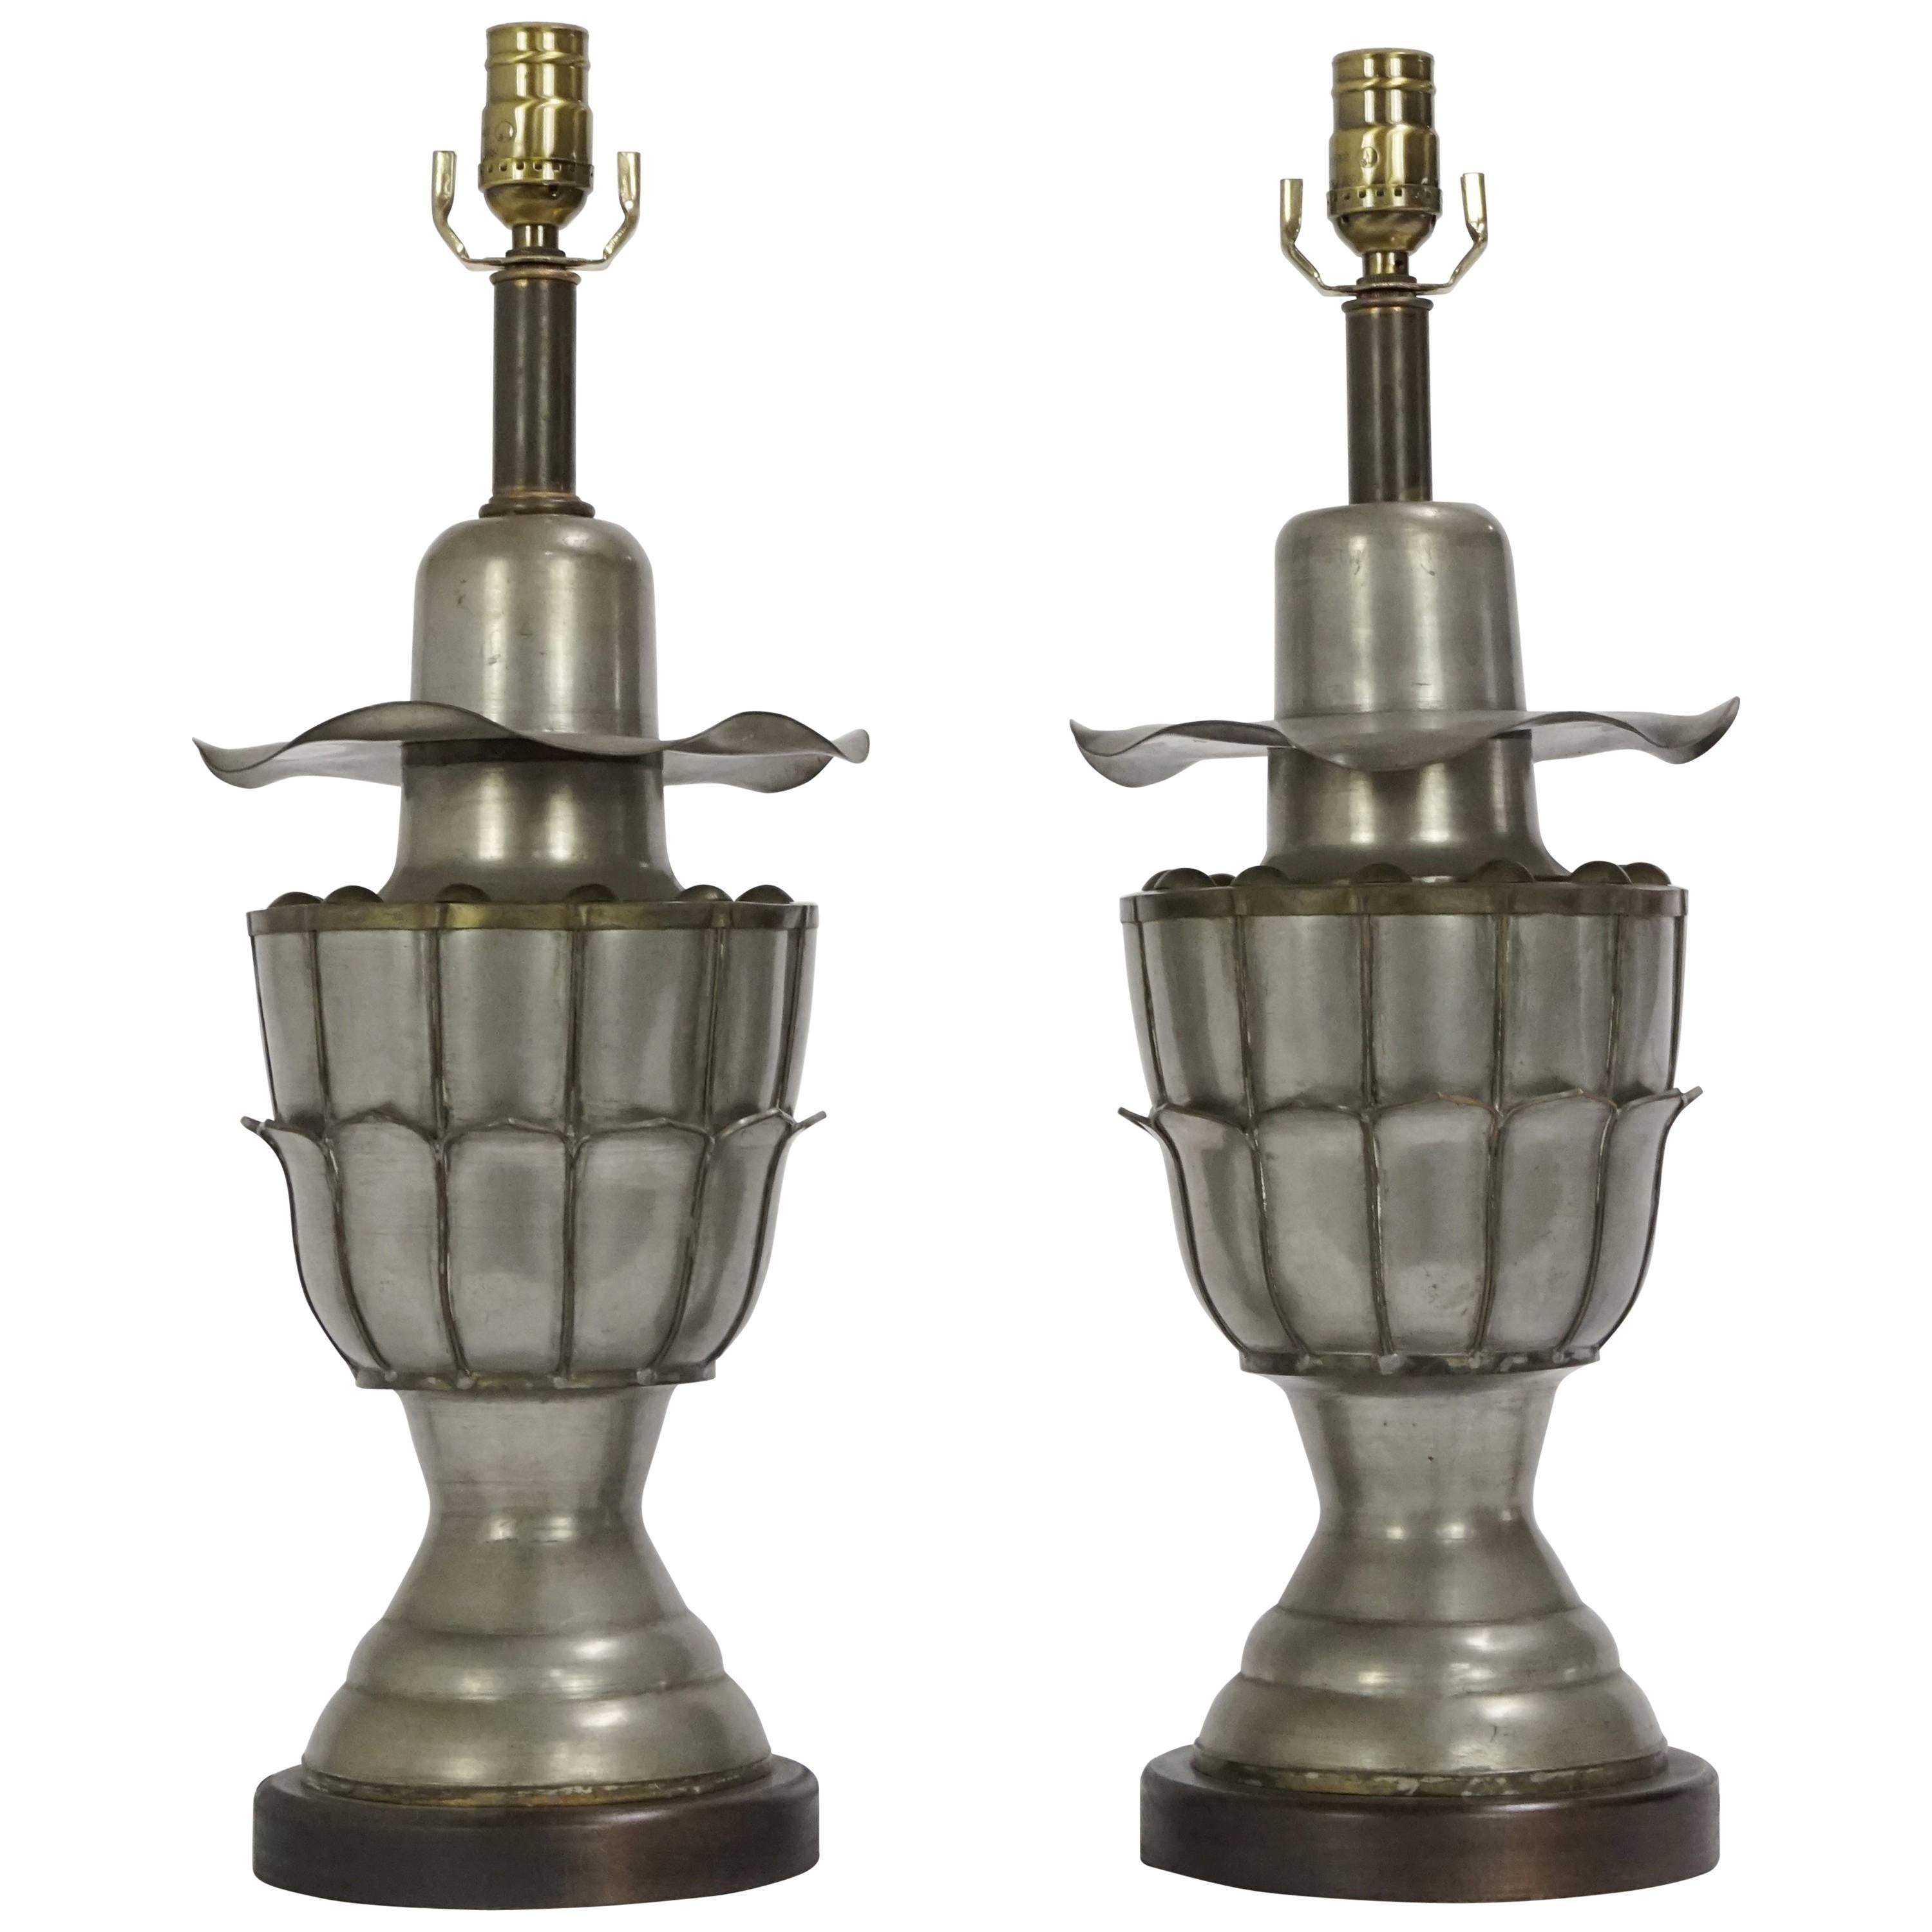 Pair of Metal Art Nouveau Table Lamps